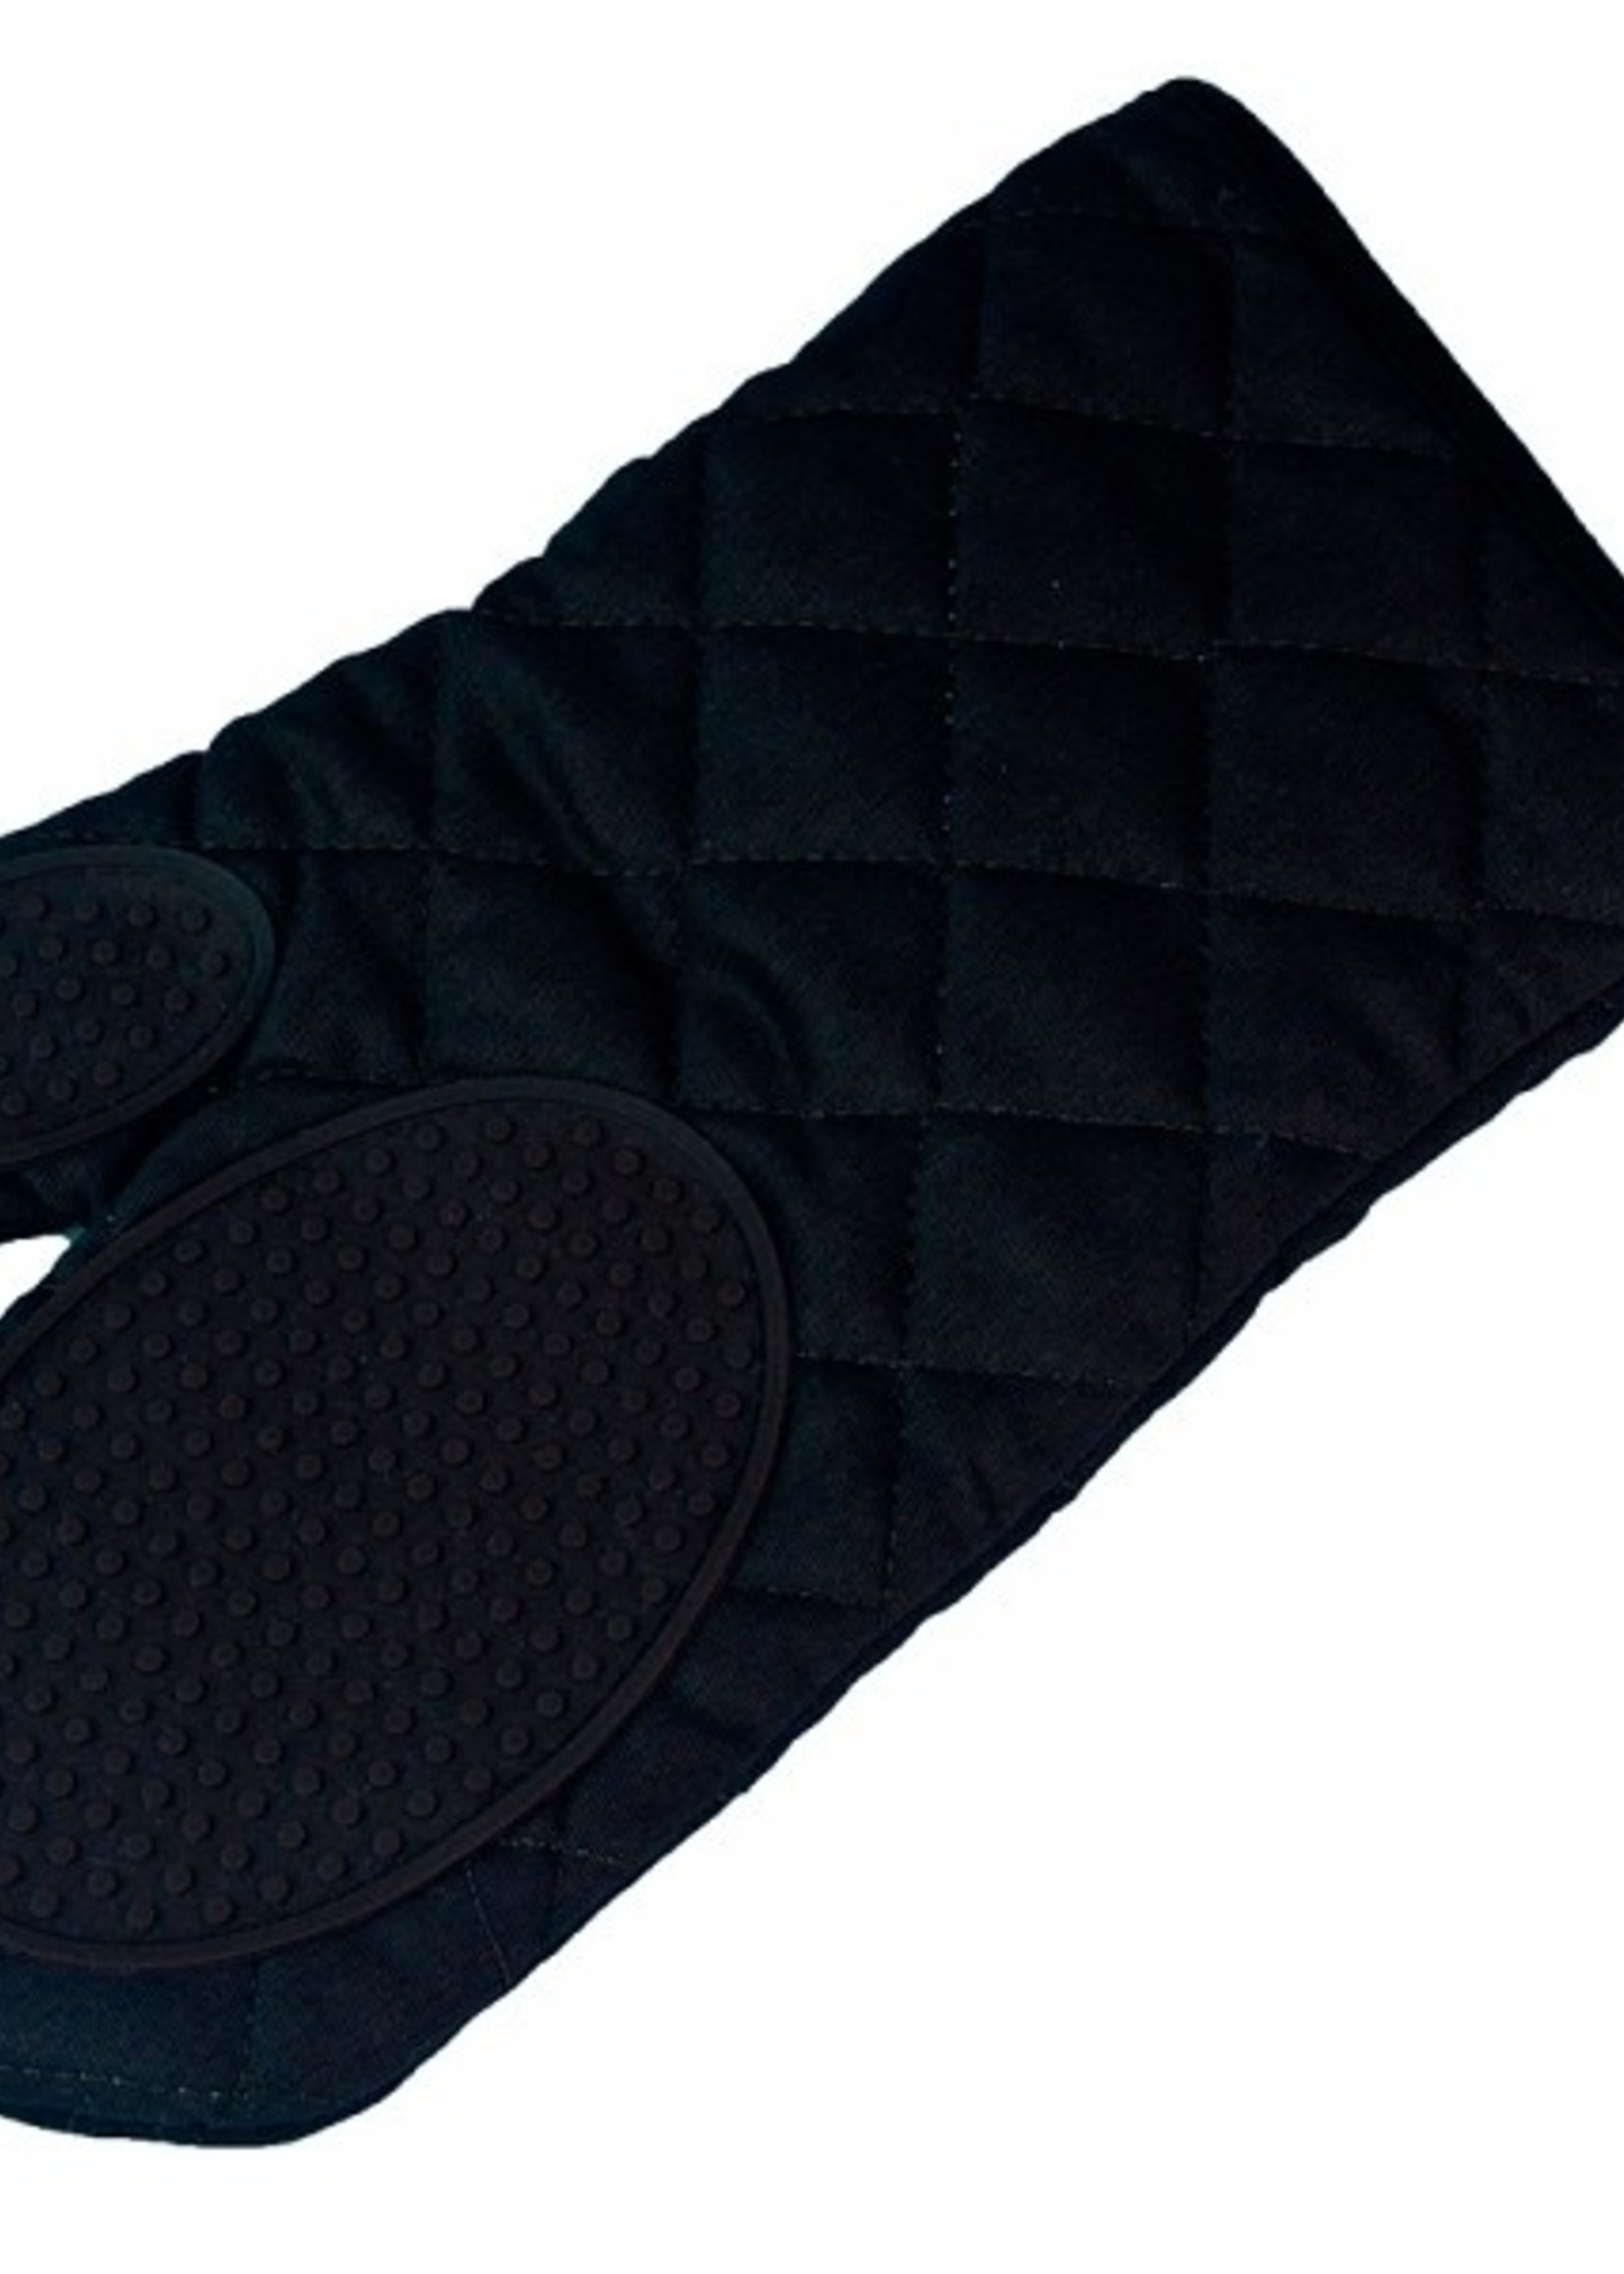 Ovenhandschoen met silicone grip 30x18cm zwart